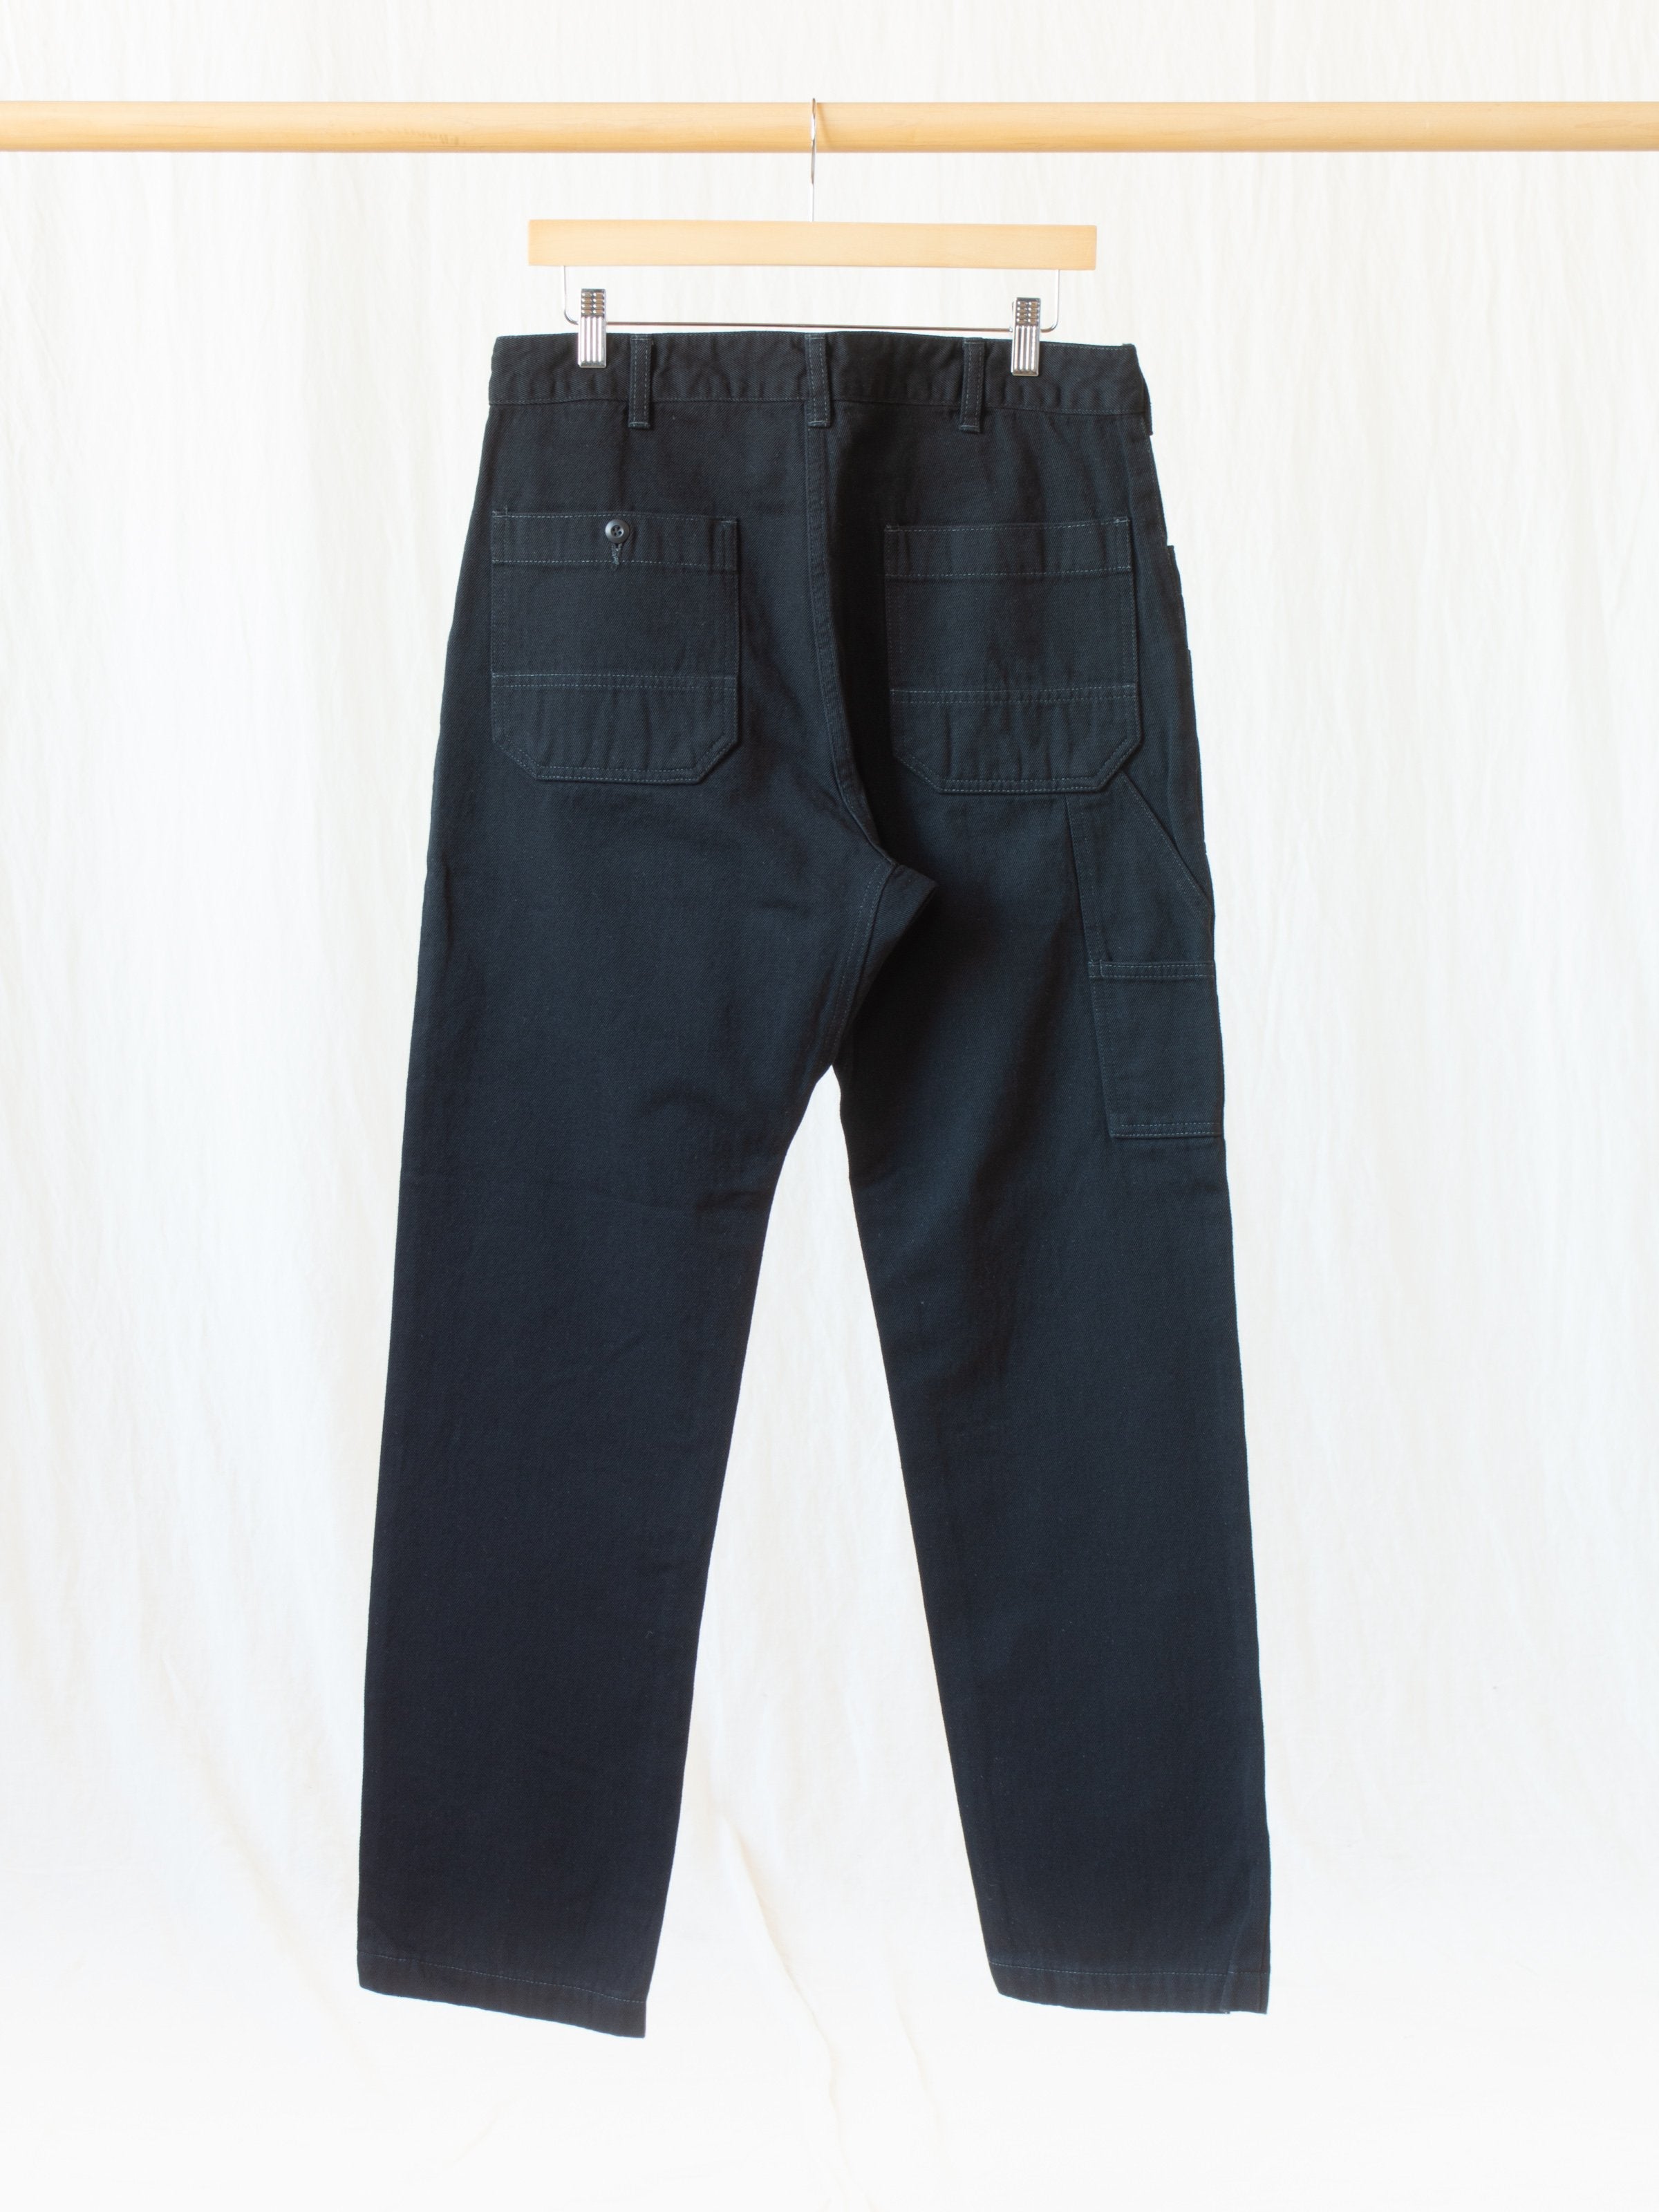 Namu Shop - Fujito Explorer Pants - Black